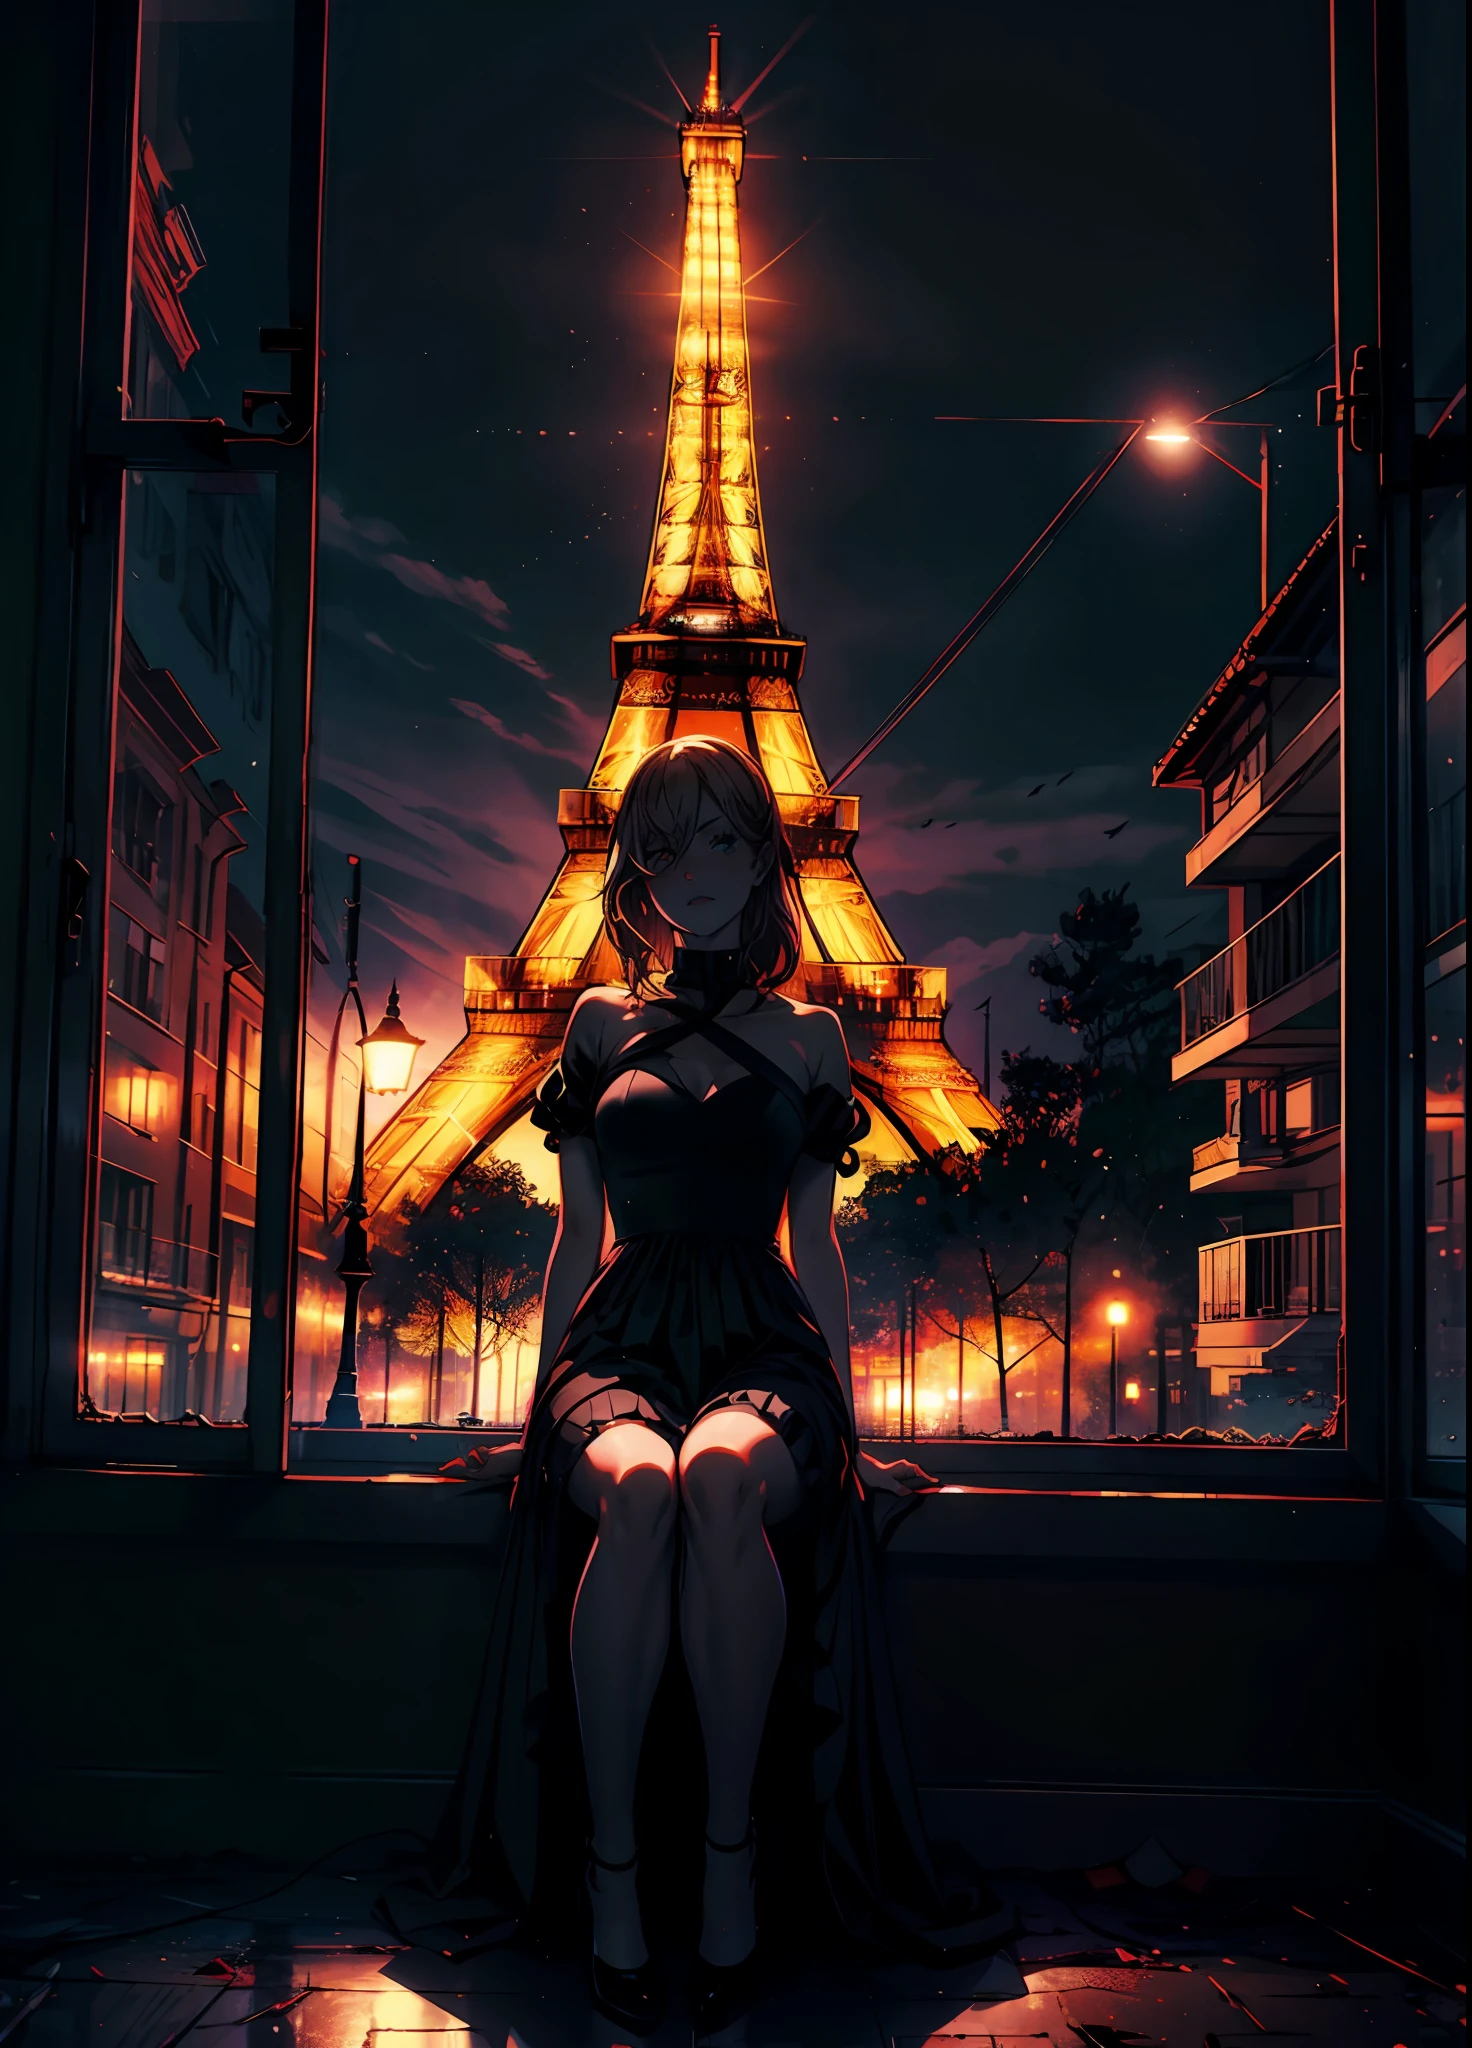 poder da motosserra usando vestido de noite preto, sentado na moldura da janela, meia-noite, sem luzes no quarto,  Torre Eiffel brilhante no fundo